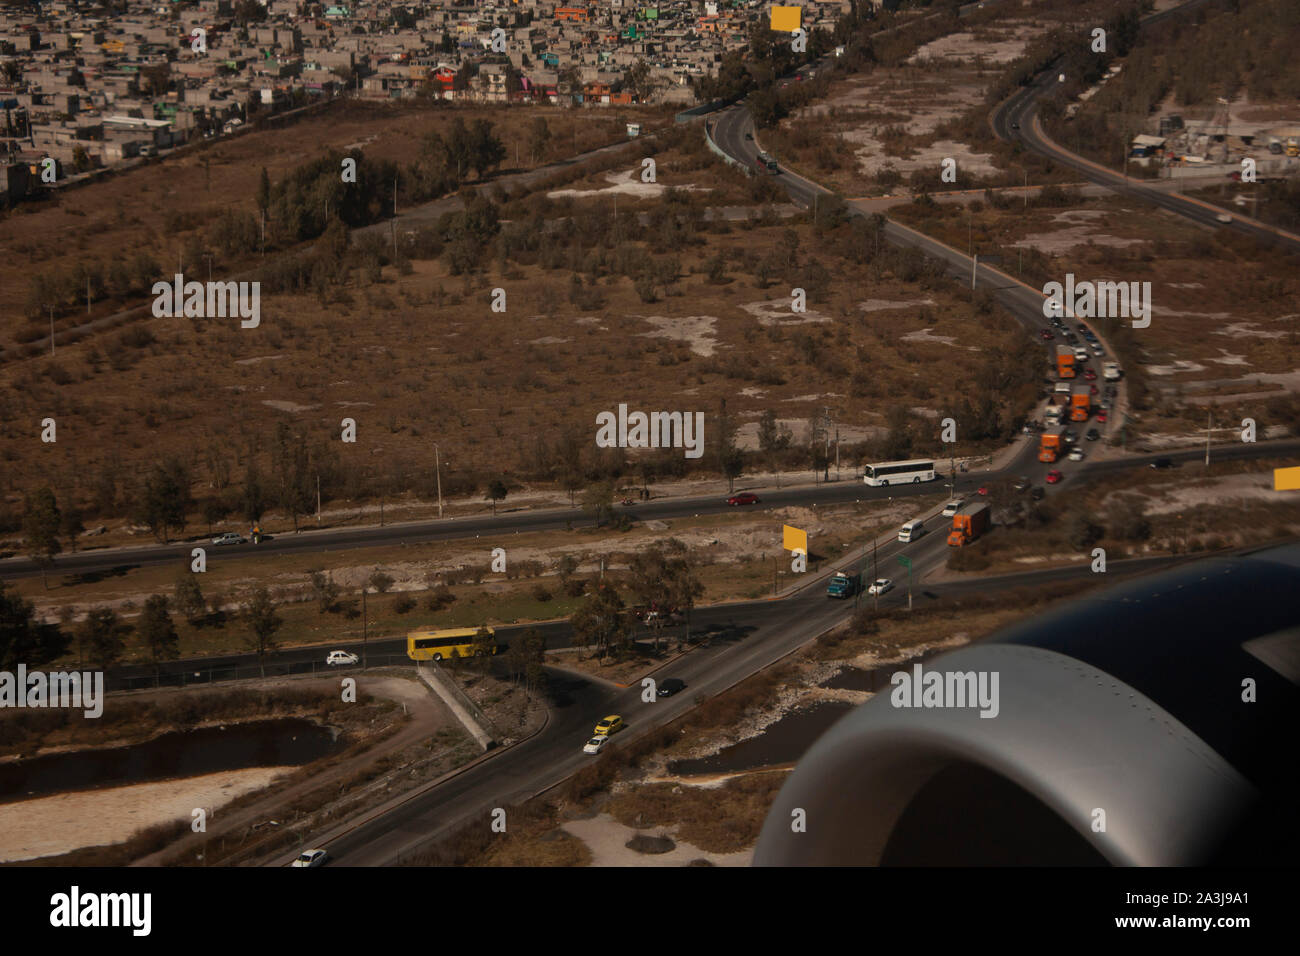 Vue aérienne de la ville de Mexico à partir de la fenêtre de l'avion vous pouvez voir la ville en mouvement Banque D'Images